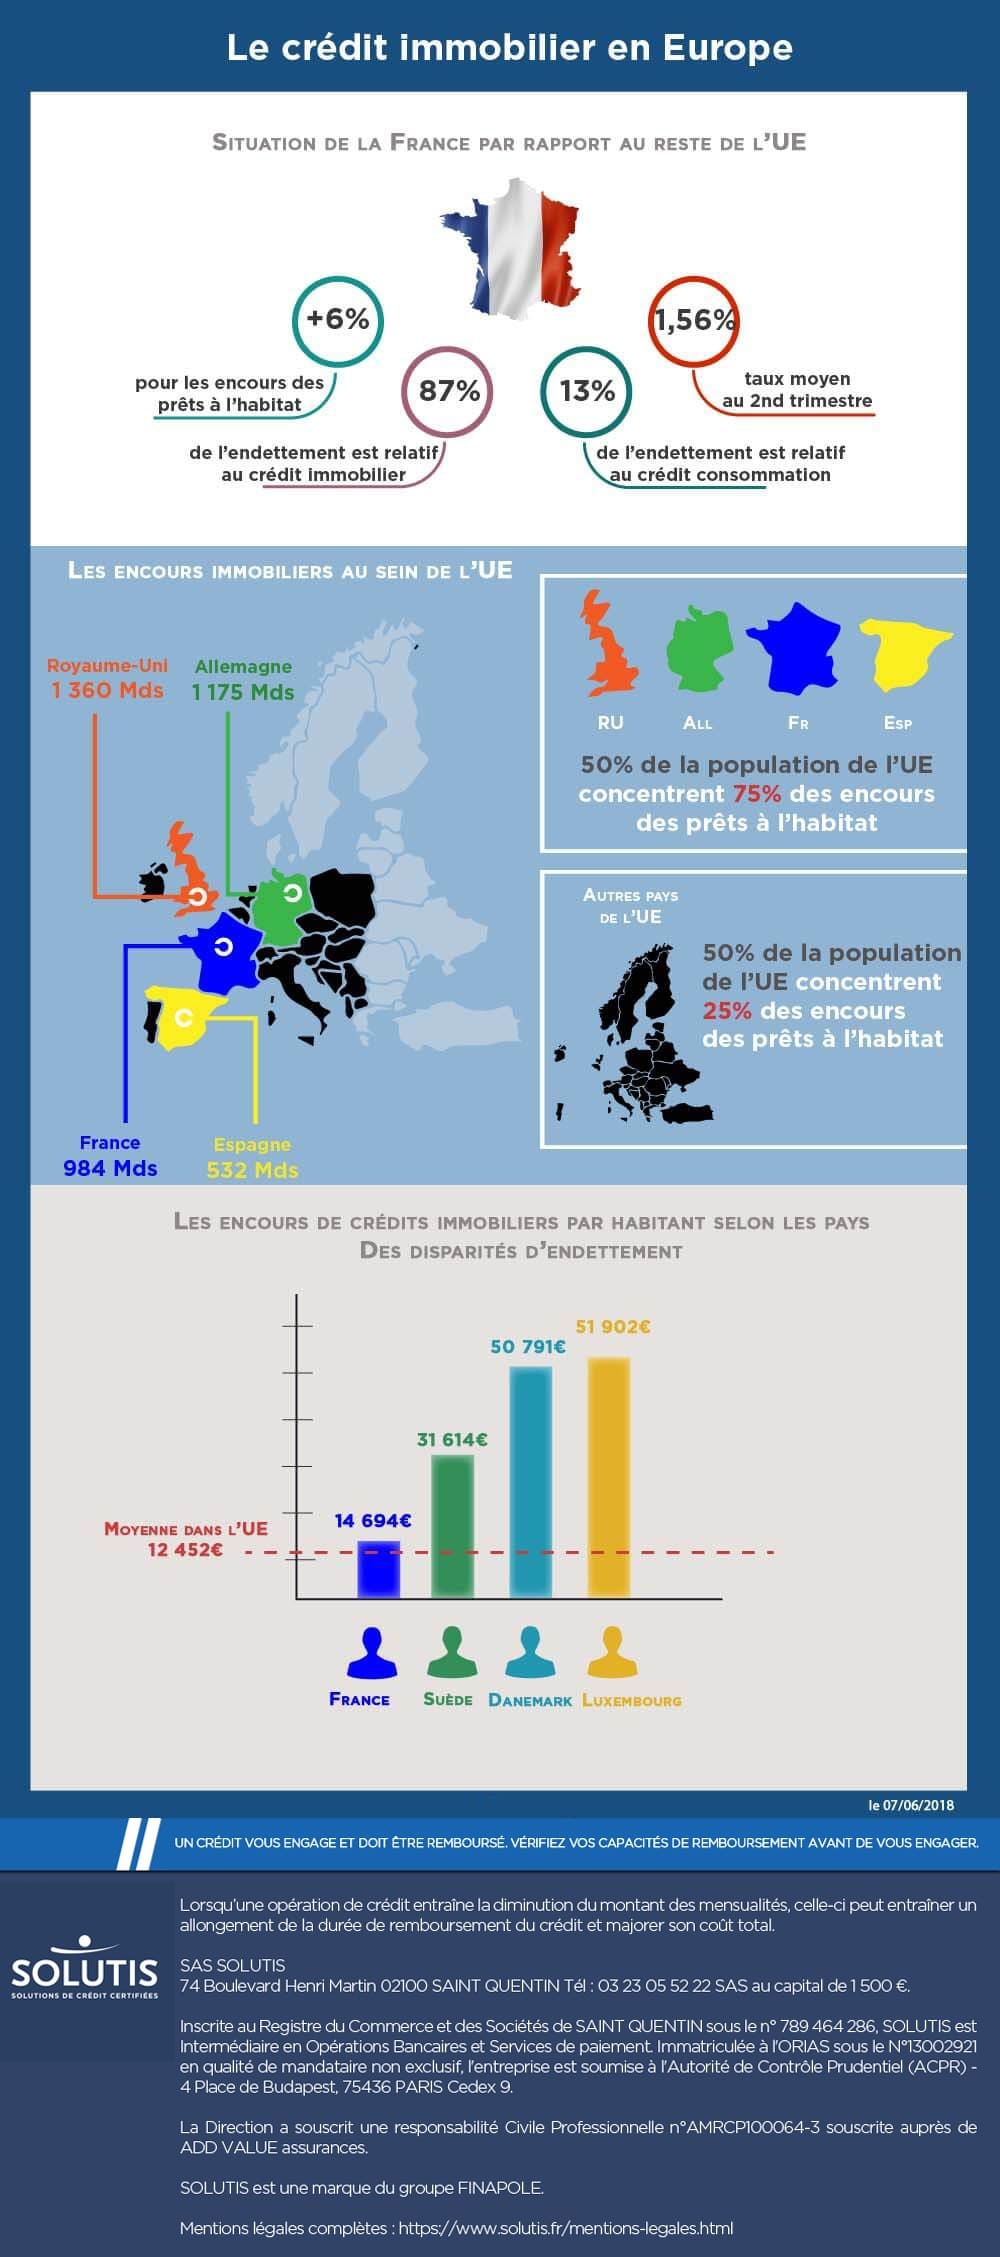 /images/actualites/infographie/Infographie-credit-immobilier-en-Europe-la-France-se-trouve-aux-premires-loges.jpg